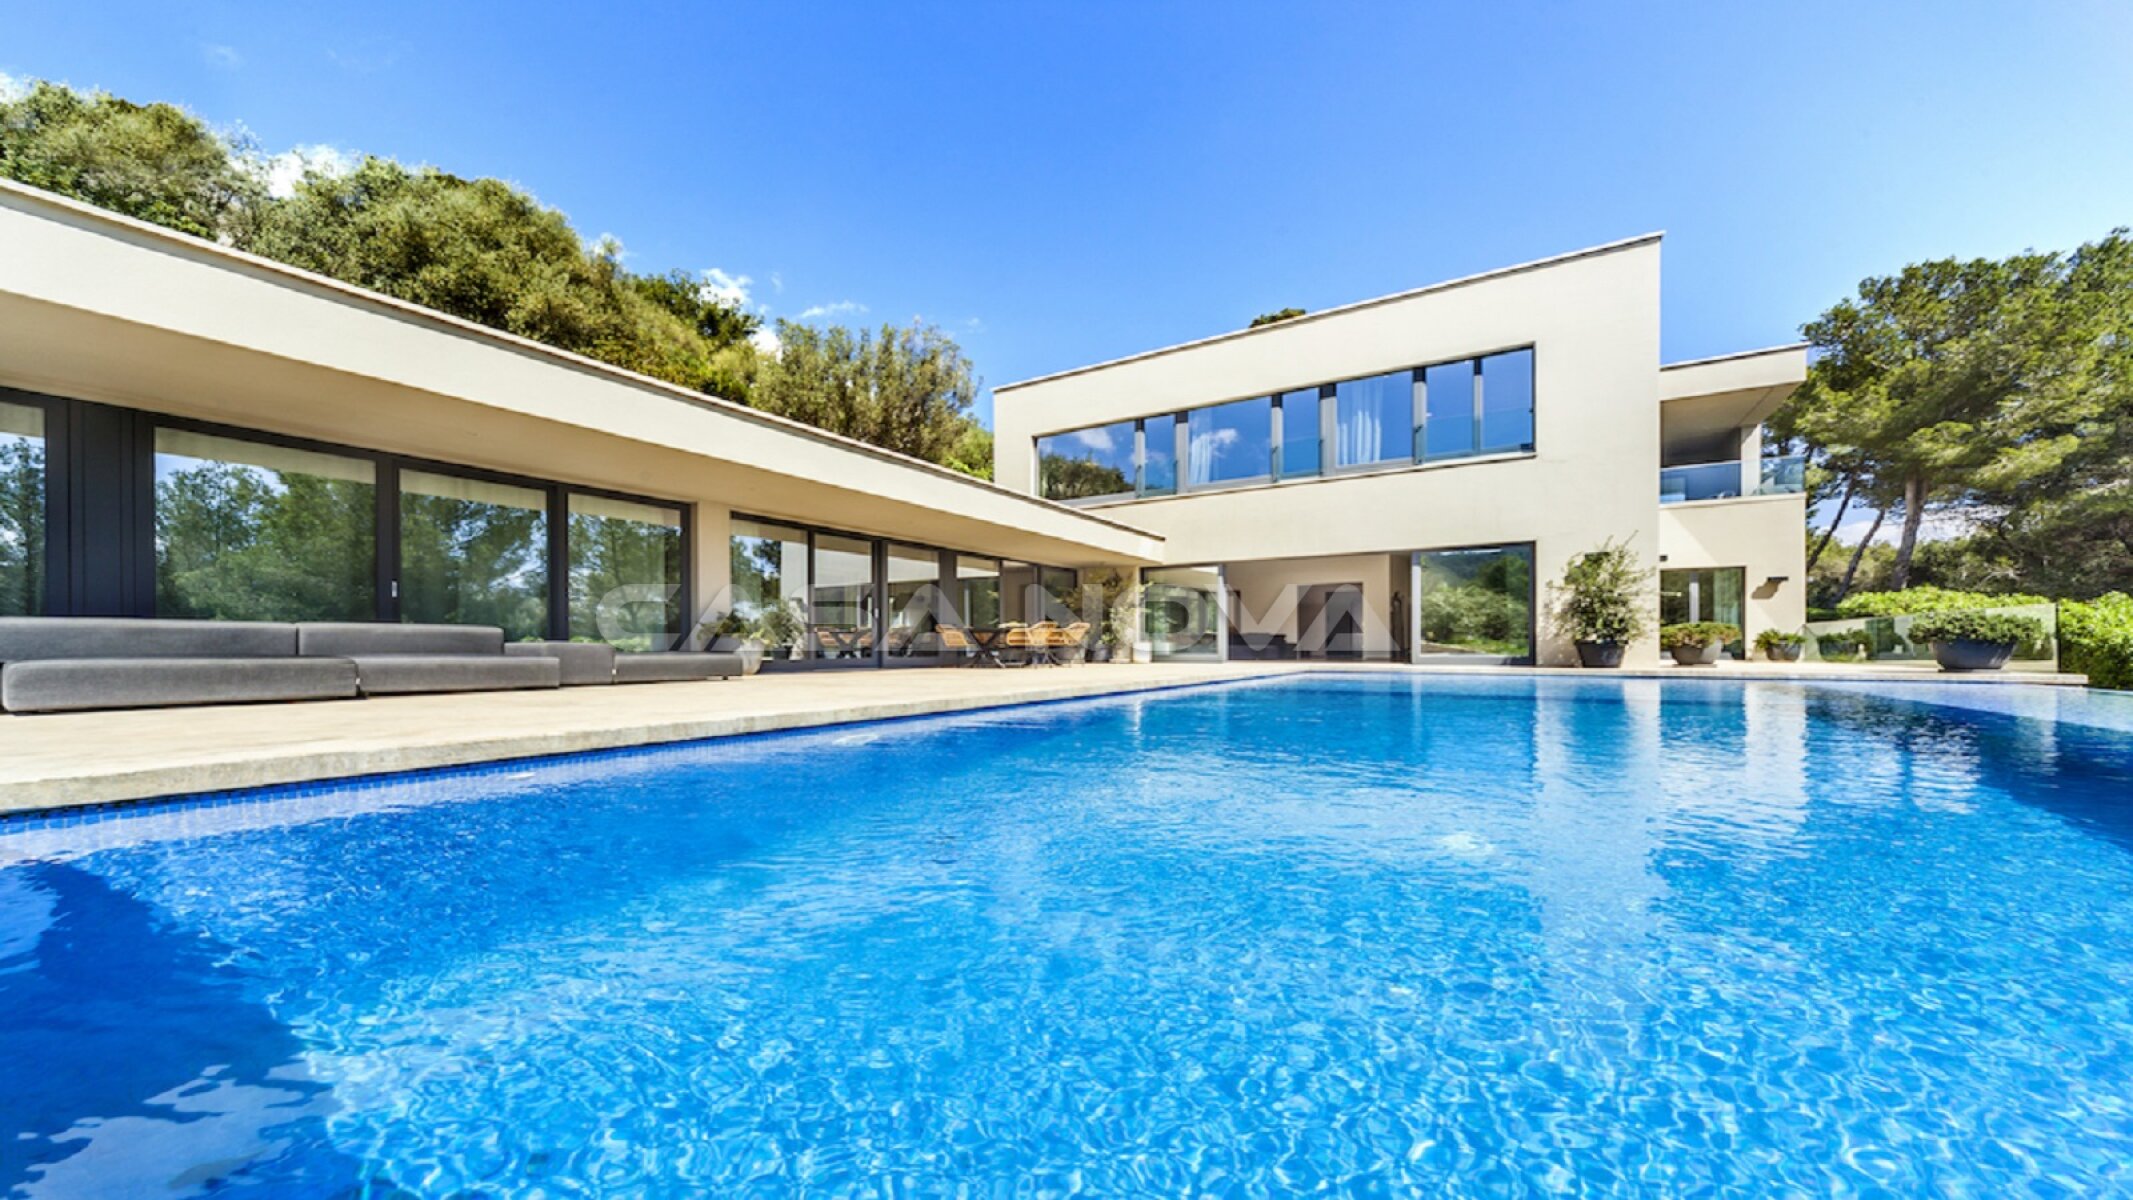 Moderne Mallorca Villa mit Lizenz zur Ferienvermietung